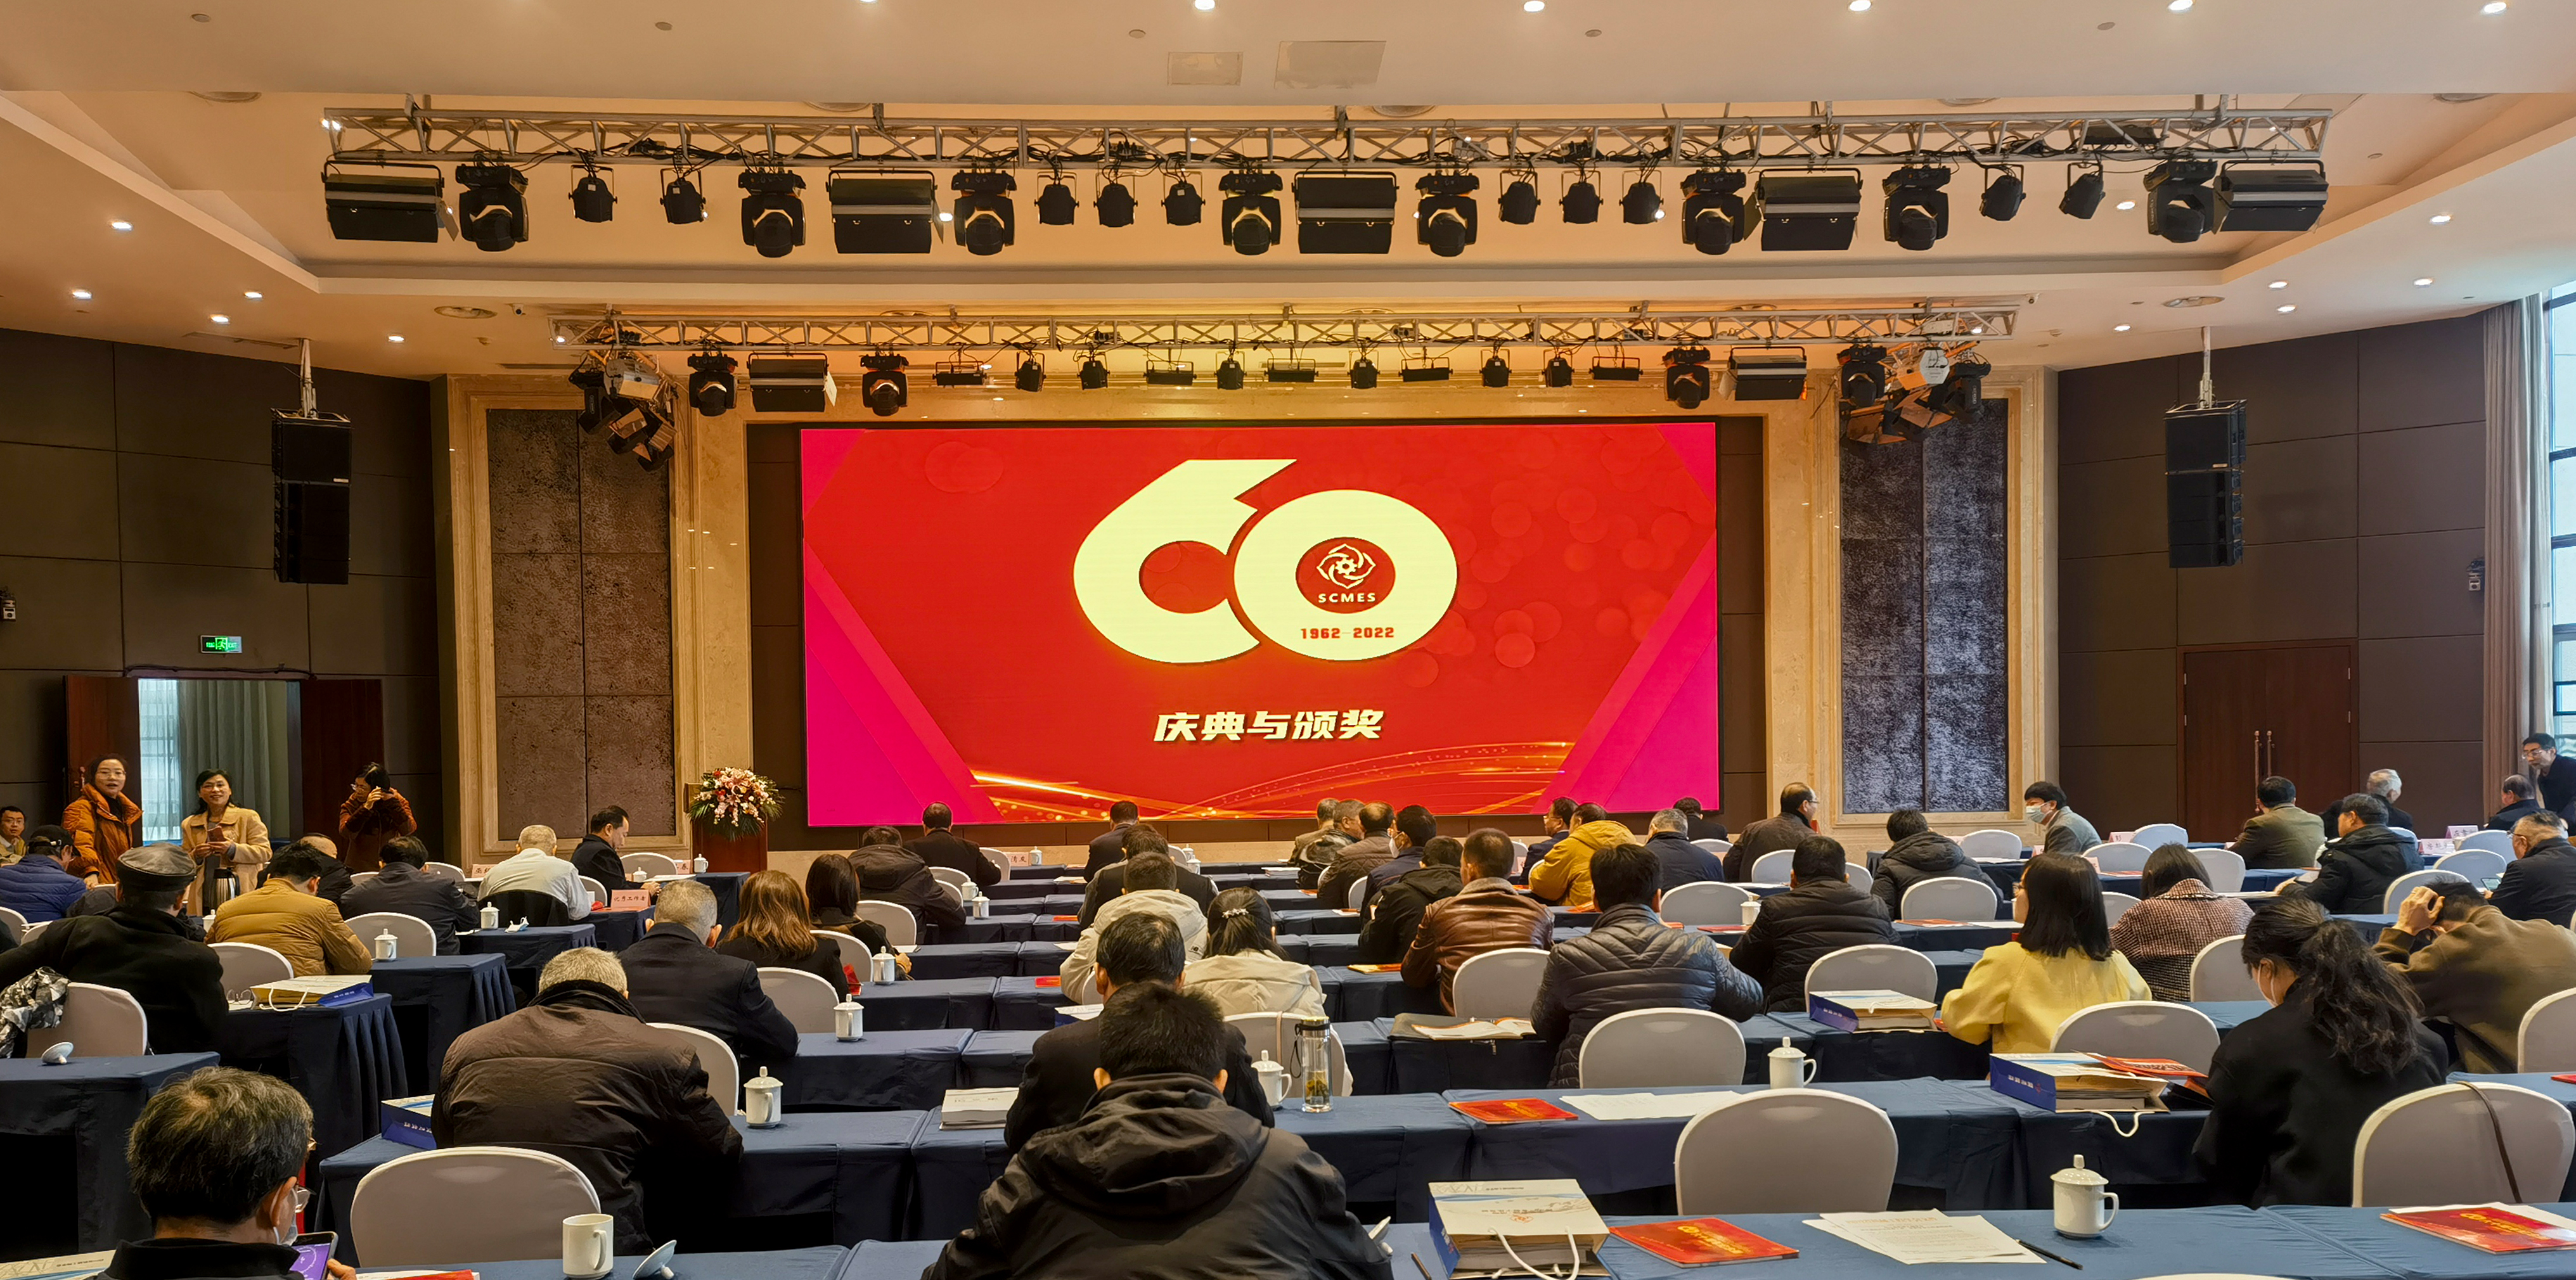 祝贺四川省机械工程学会第四届学术年会暨六十周年庆祝大会取得圆满成功！